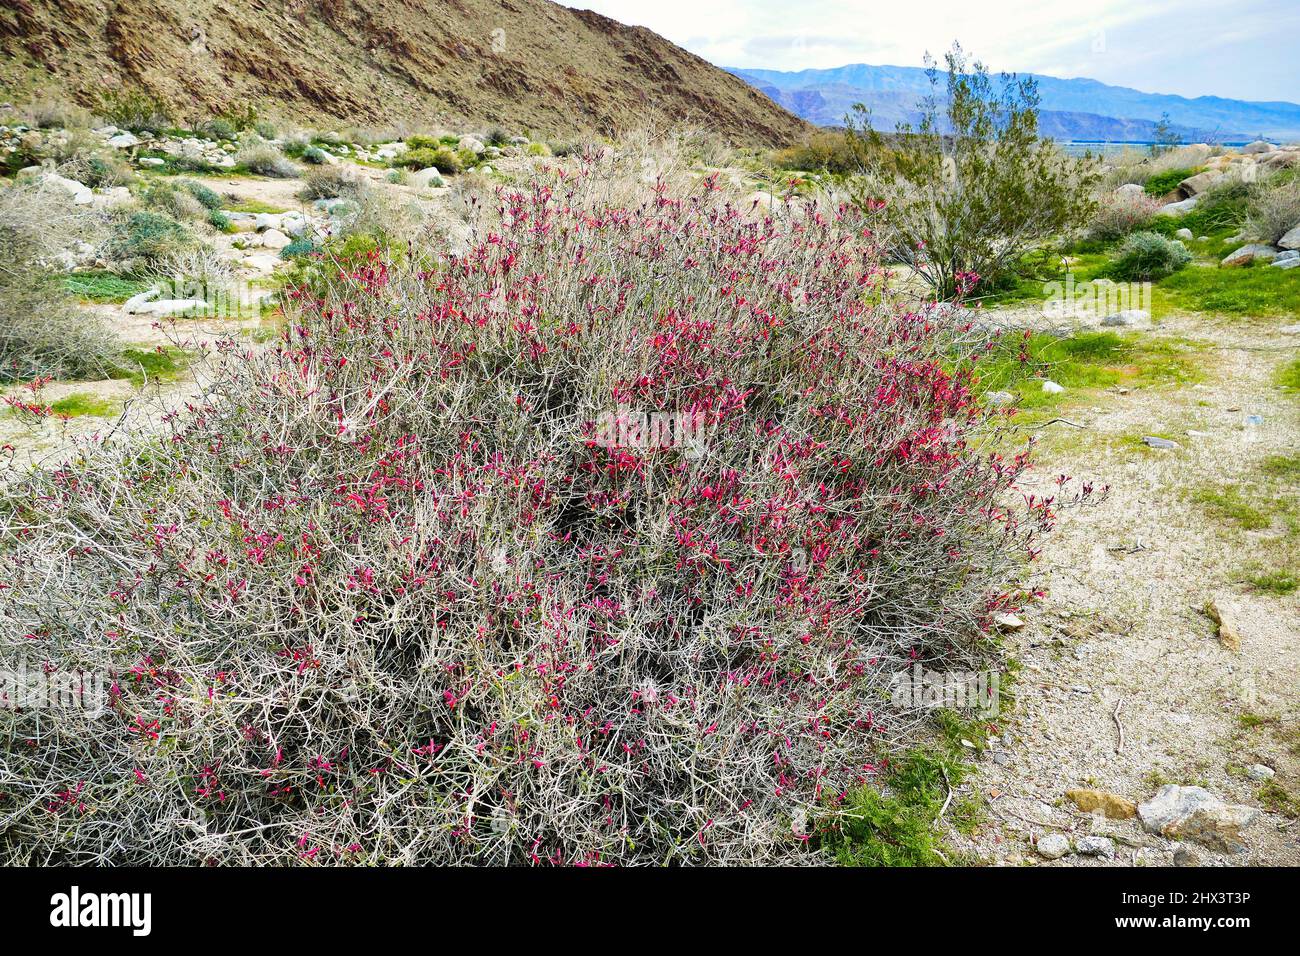 Blooming chuparosa (Justicia californica) in the Sonoran desert of Anza-Borrego, California, USA Stock Photo